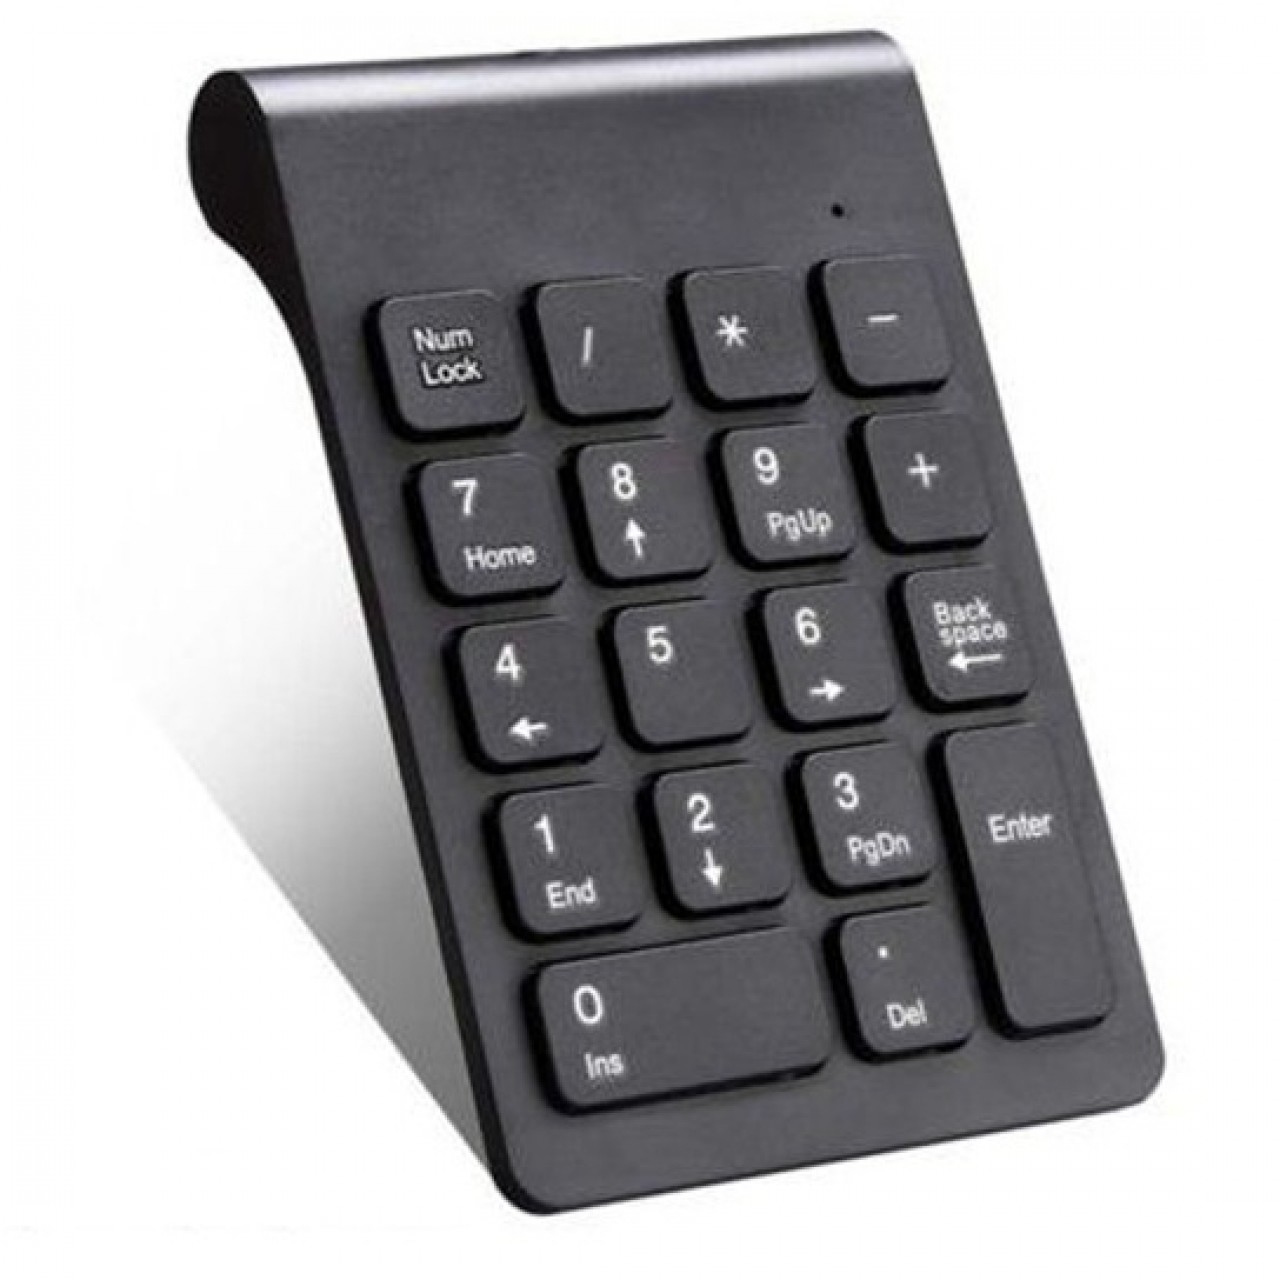 Mini Numeric Wireless Keypad 2.4GHz 18 keys Pad - Black